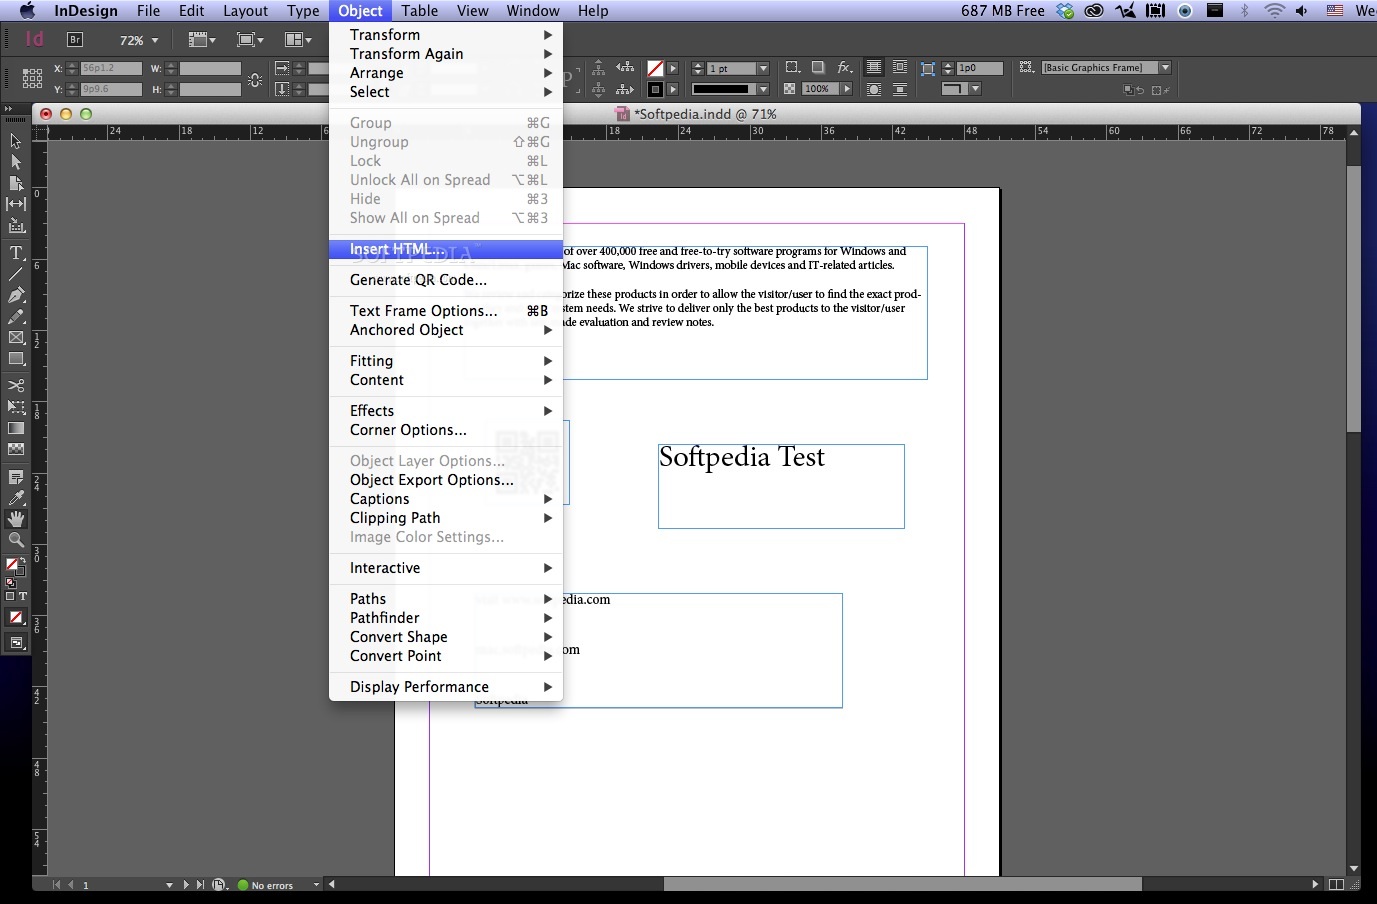 Adobe indesign 5.5 download